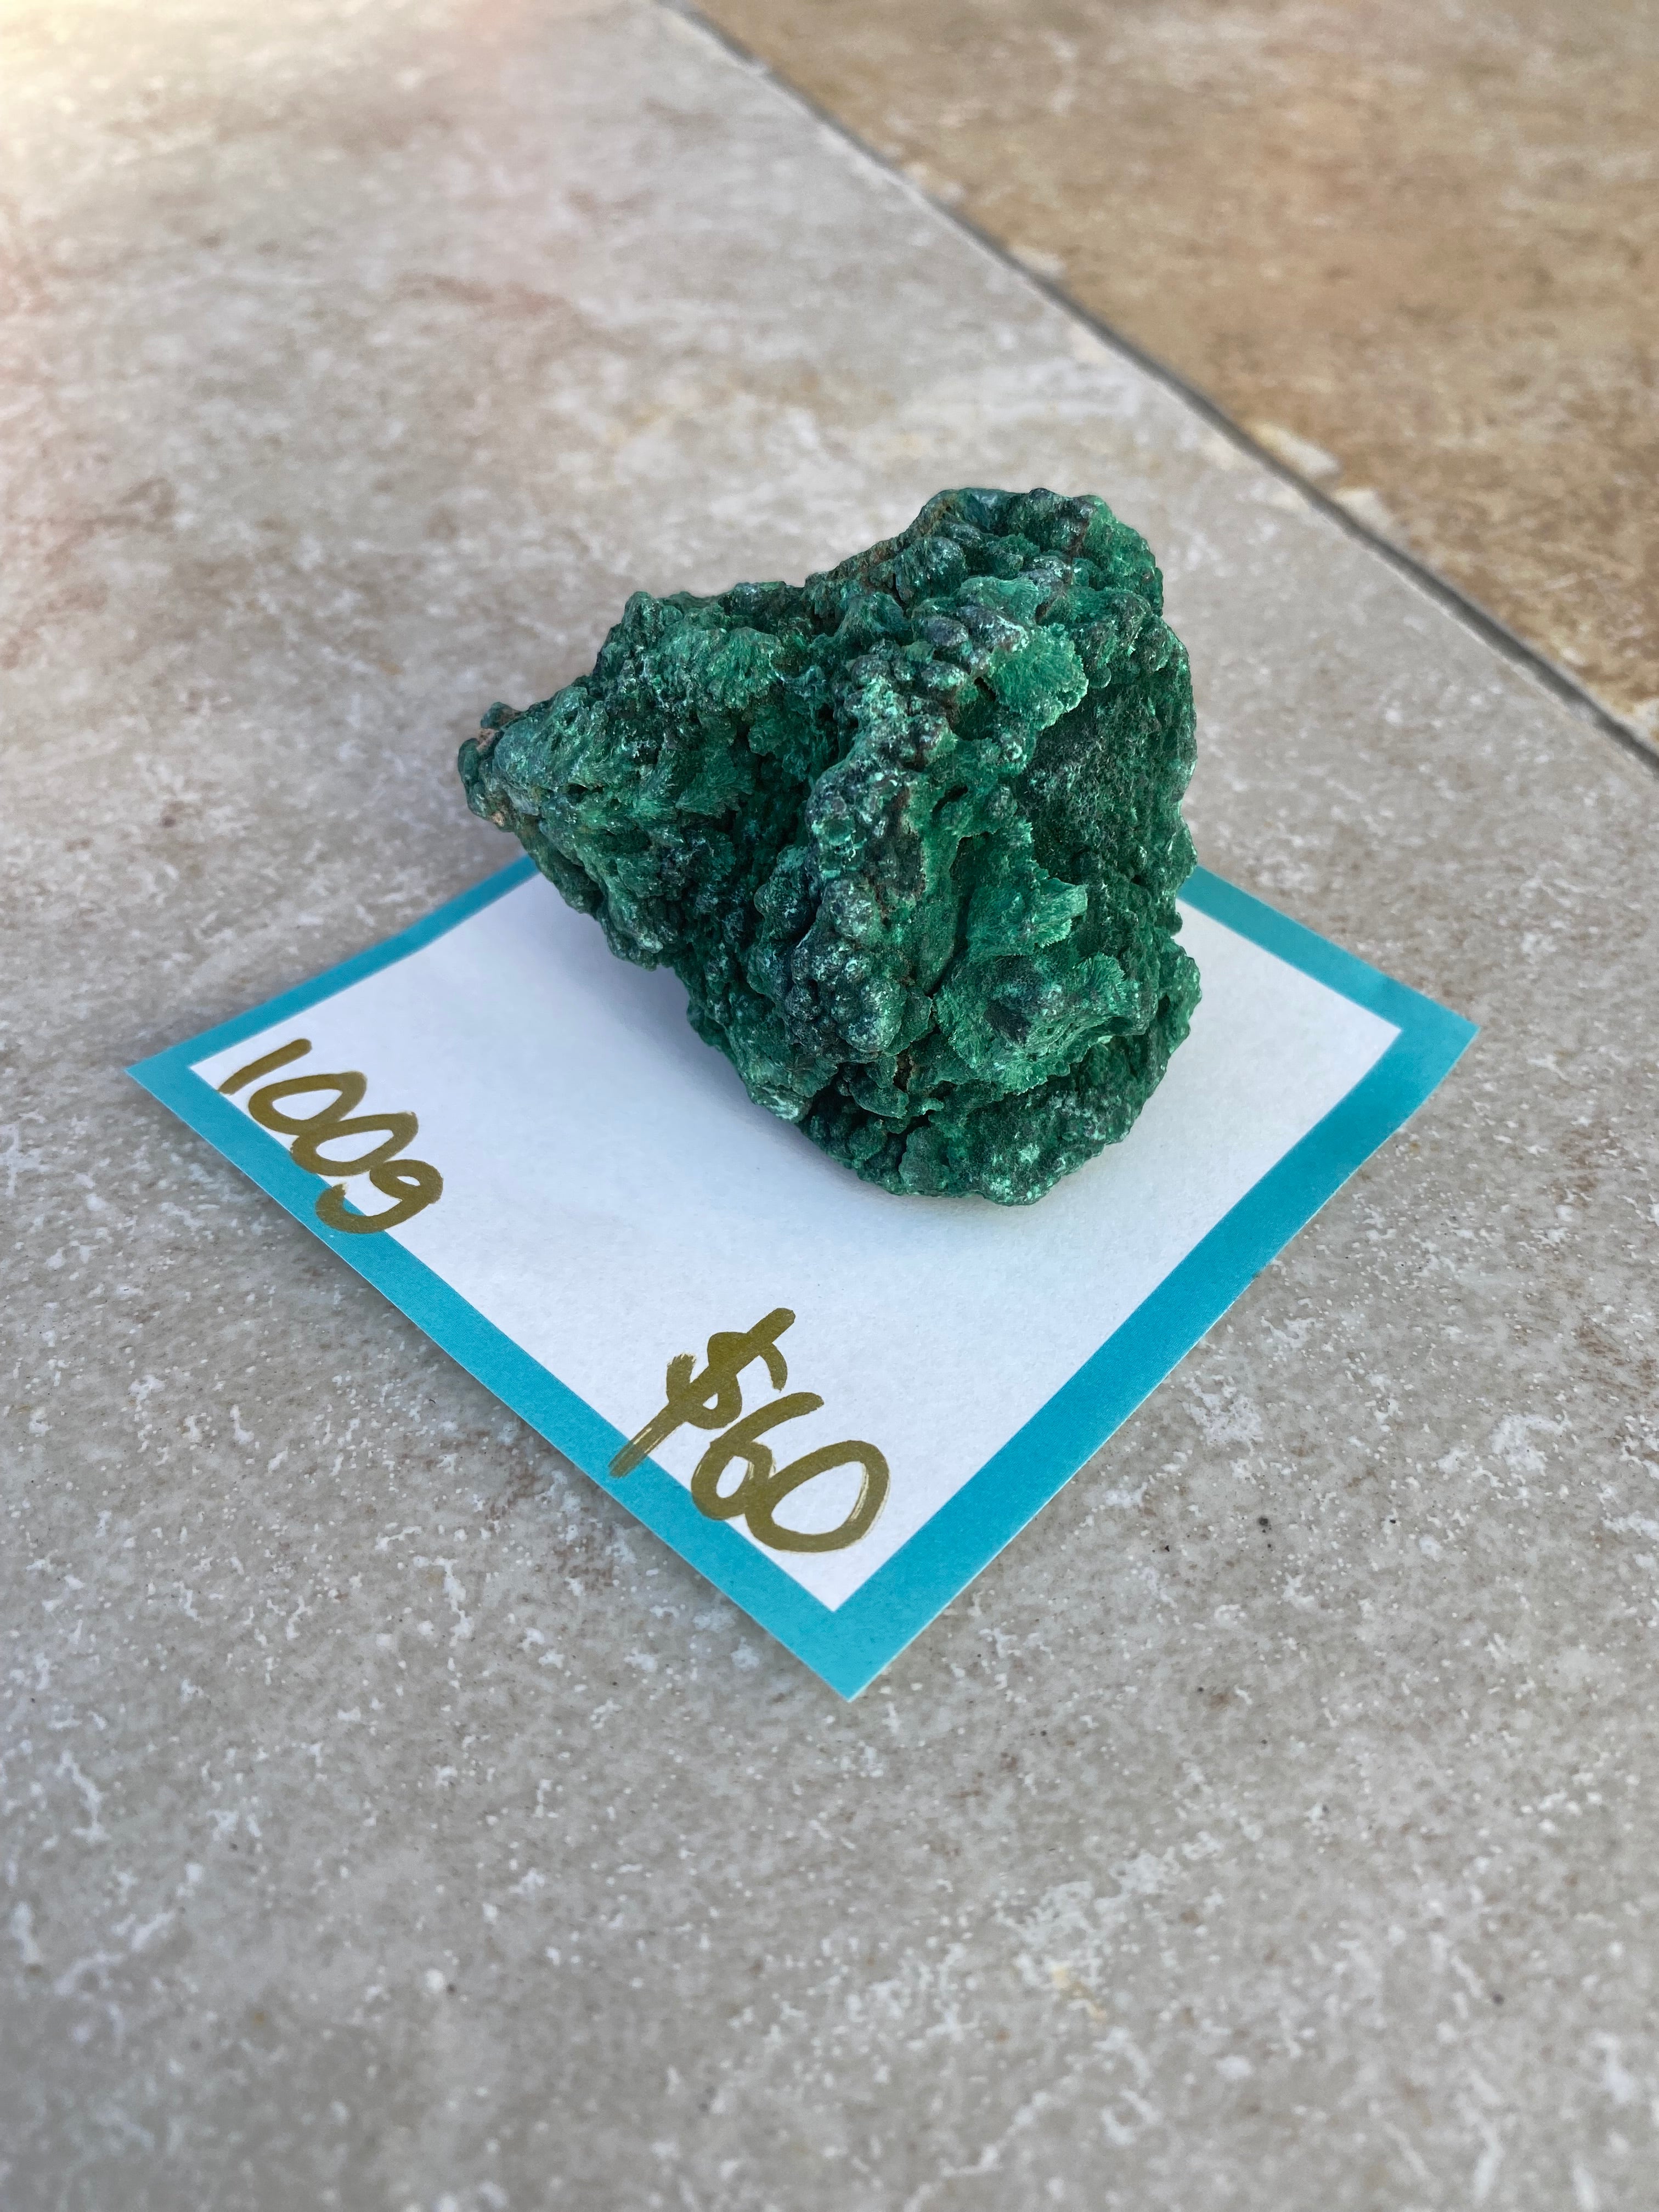 malachite specimen - 100g